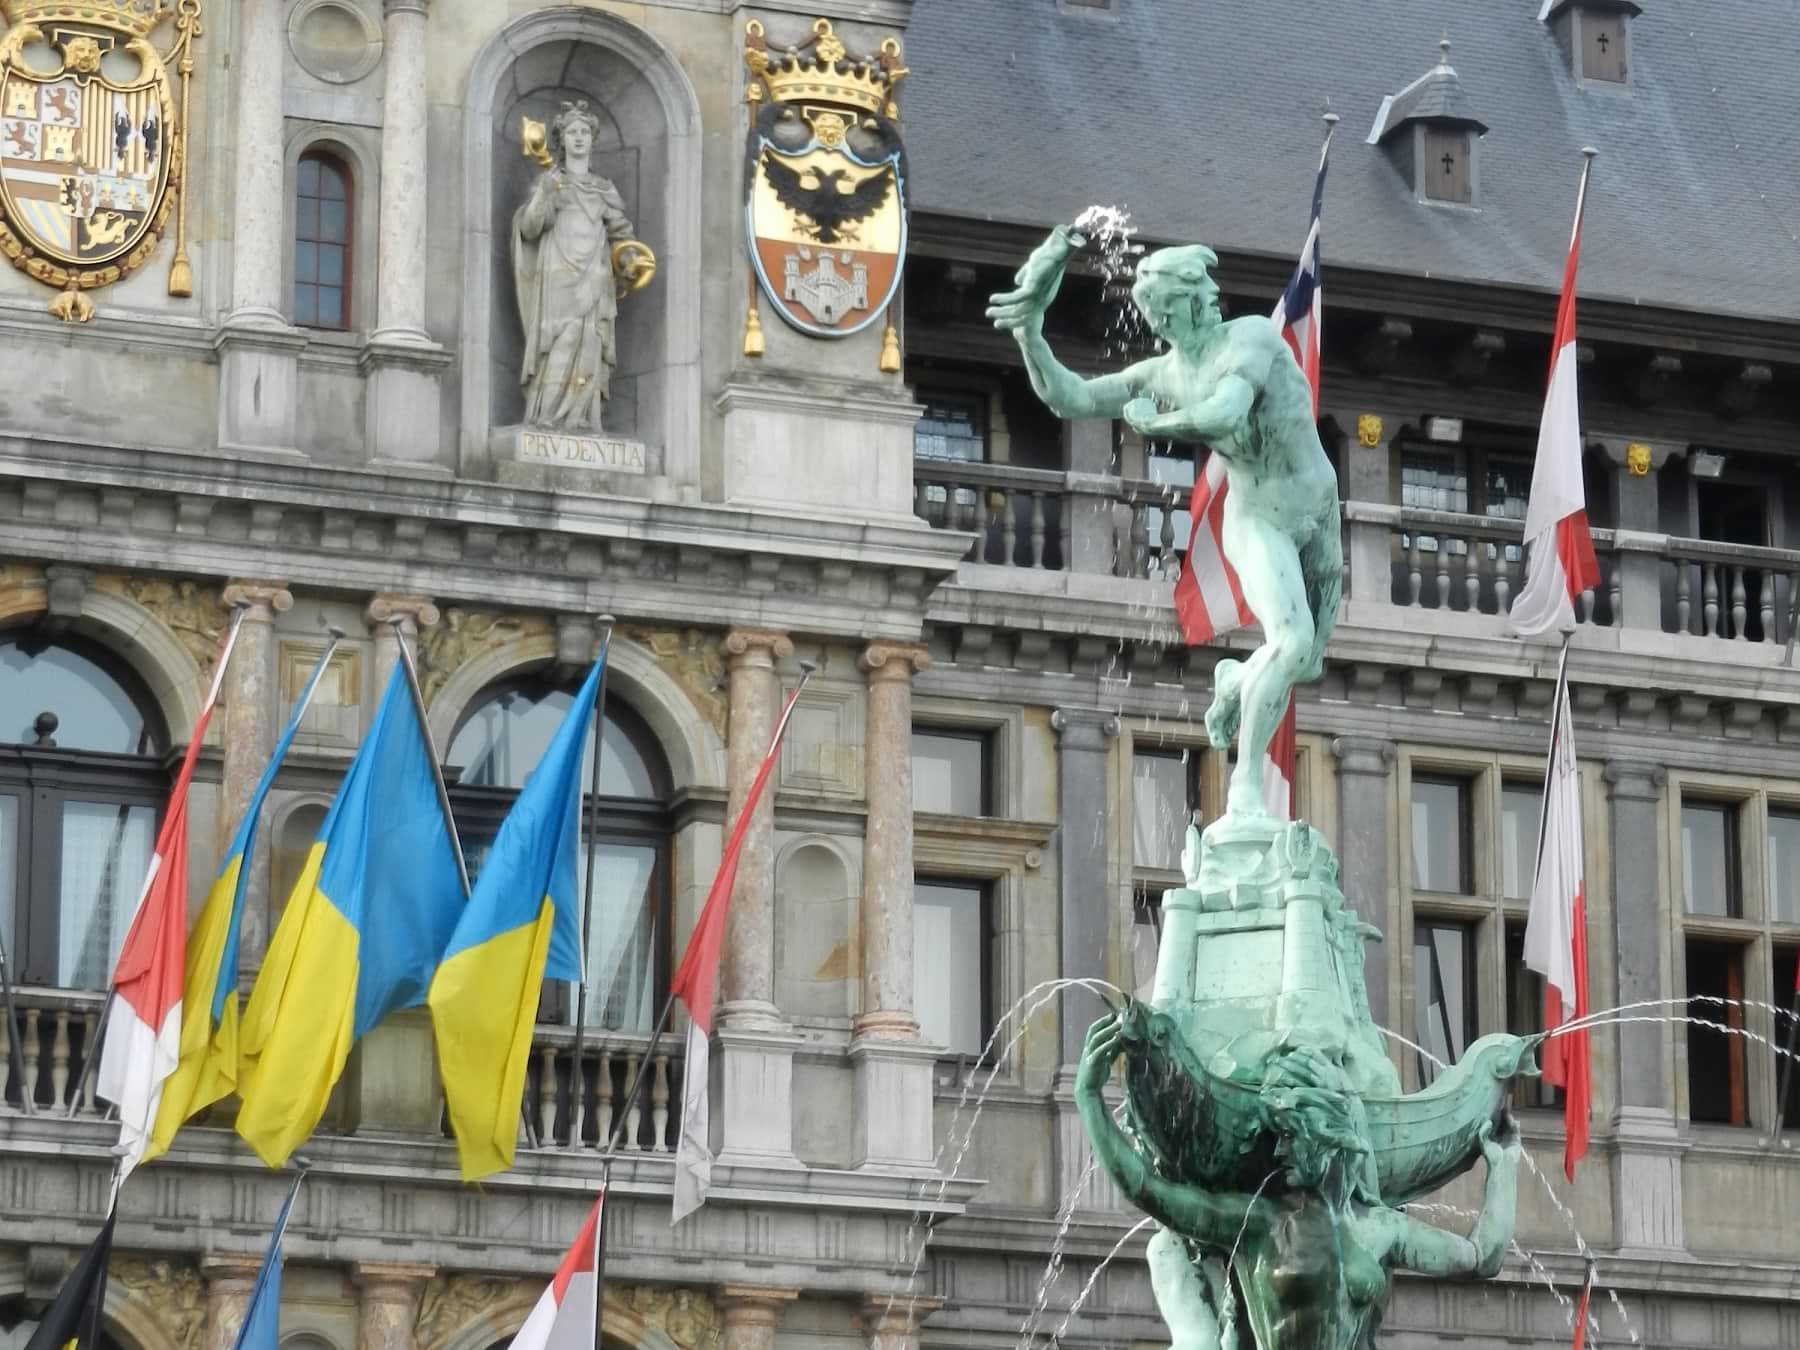 Antwerpen und sein barockes Glanzstück